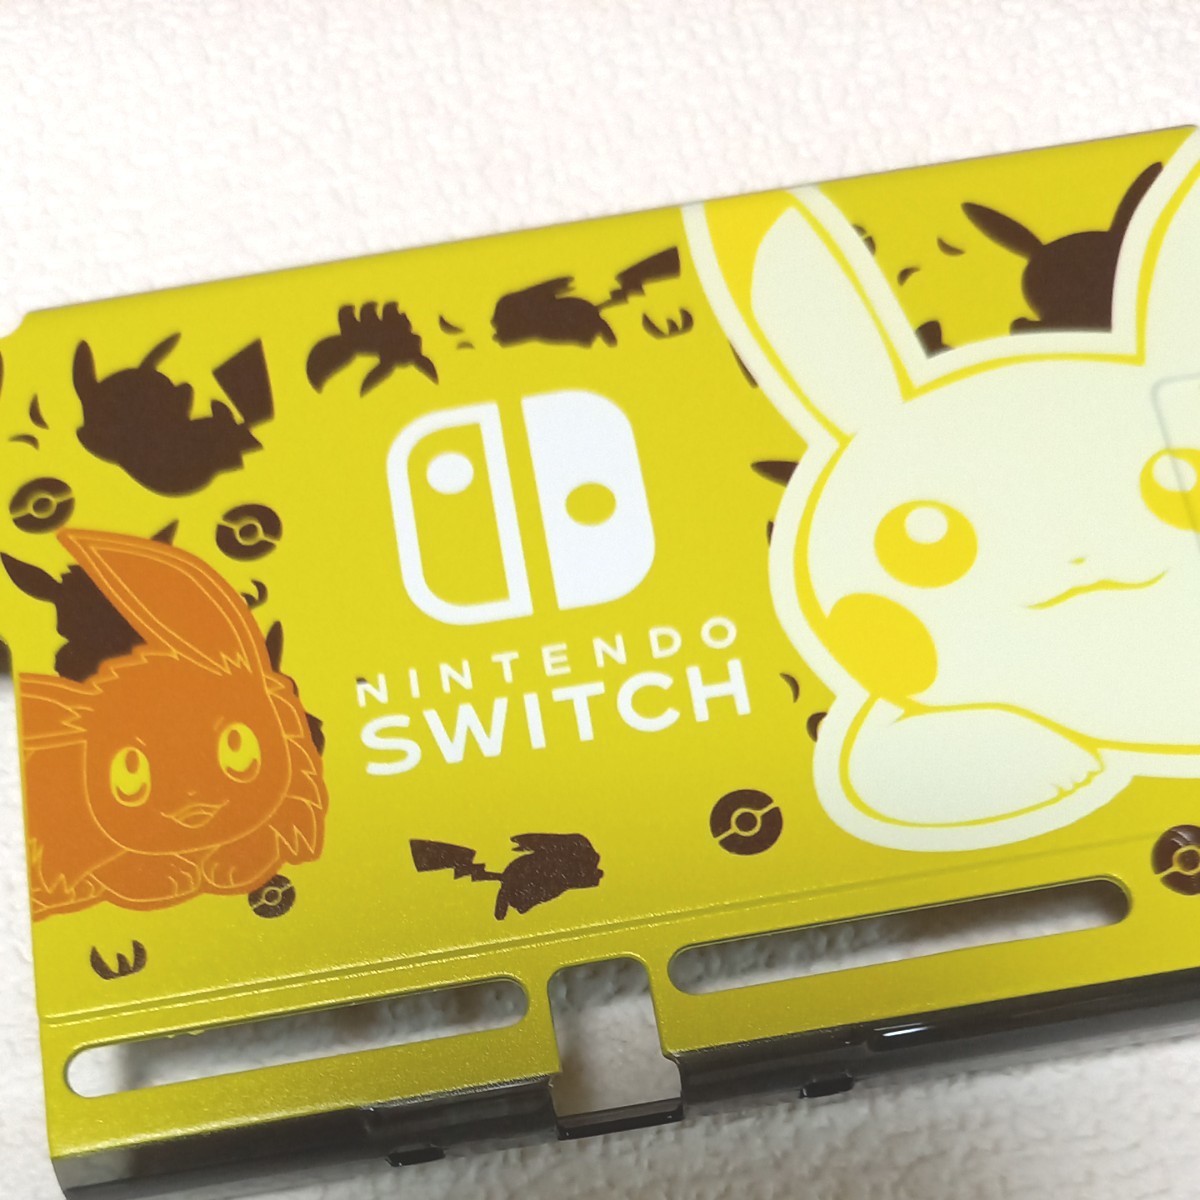 任天堂 Switch 保護カバー